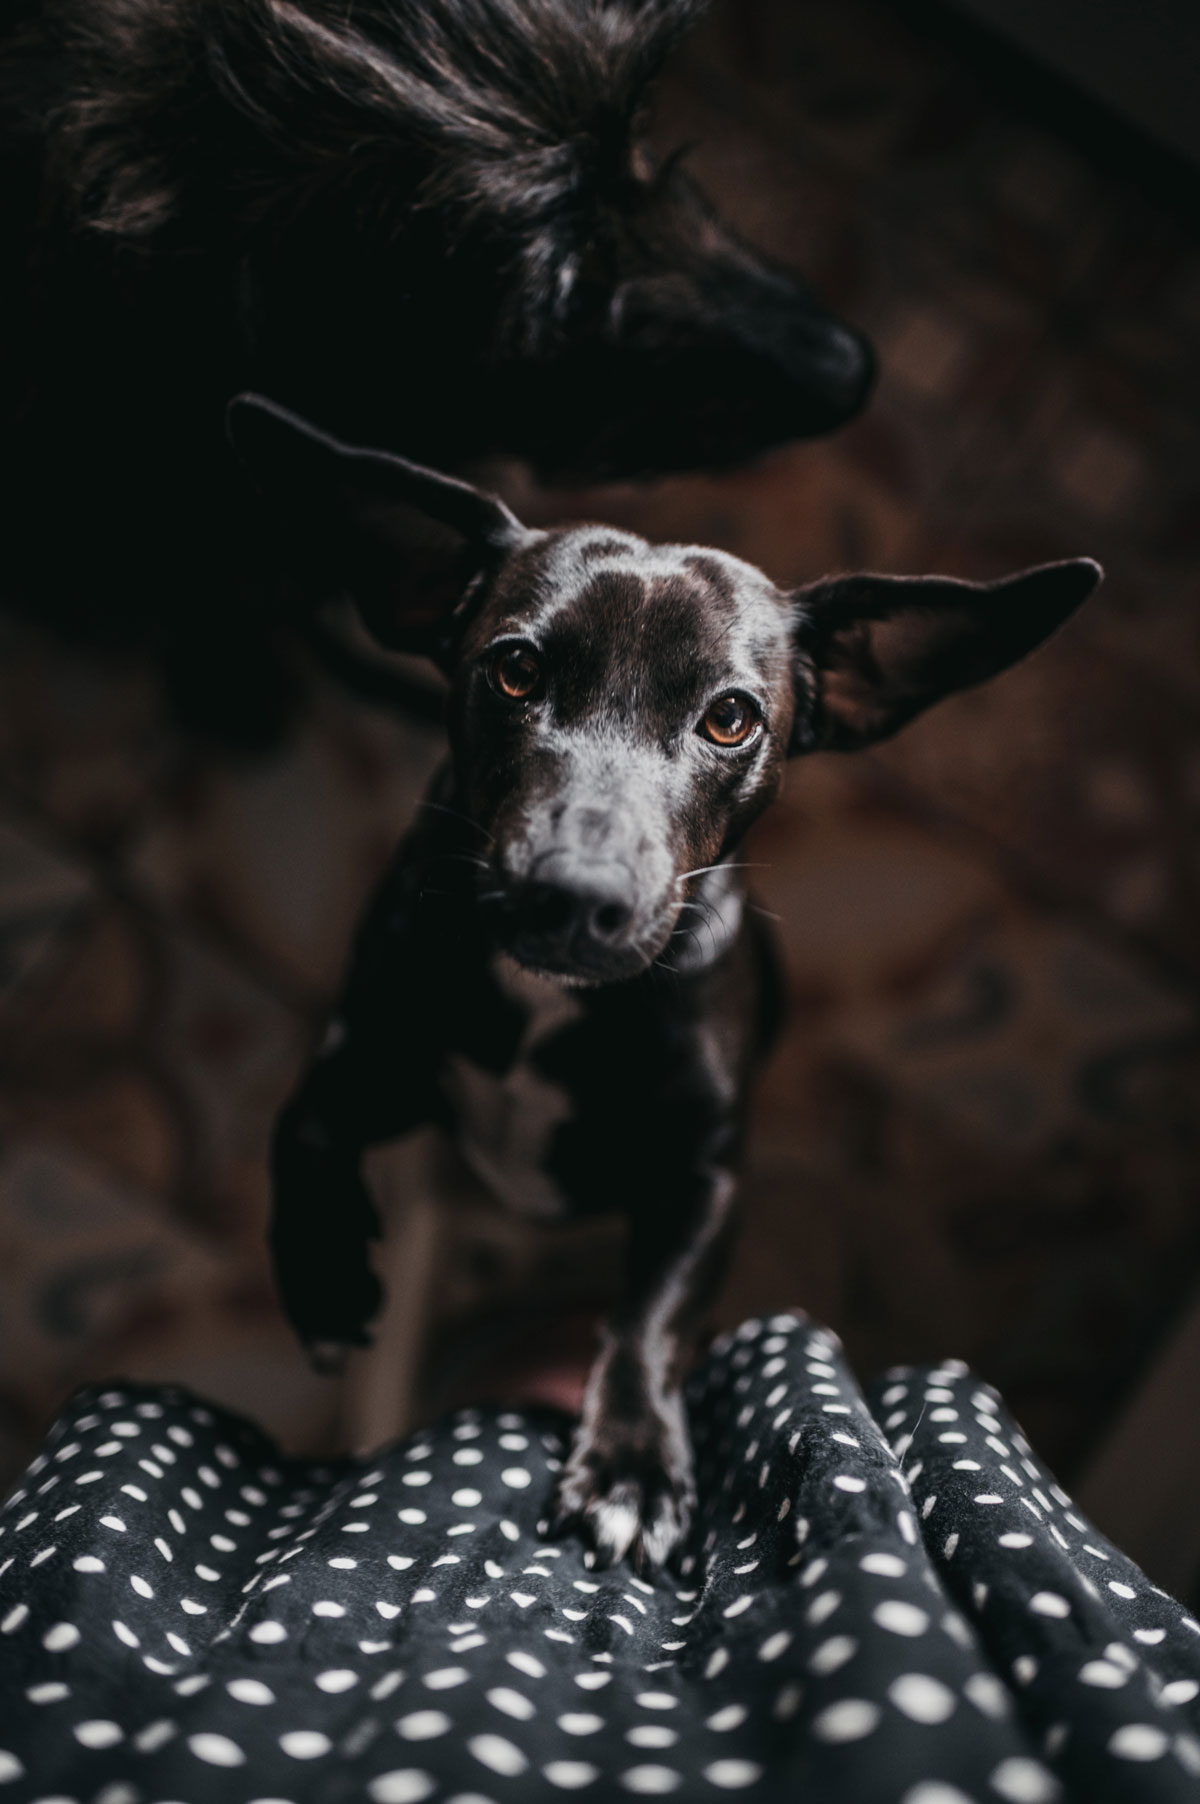 Apagar la luz - trucos de perros- Connect my dog